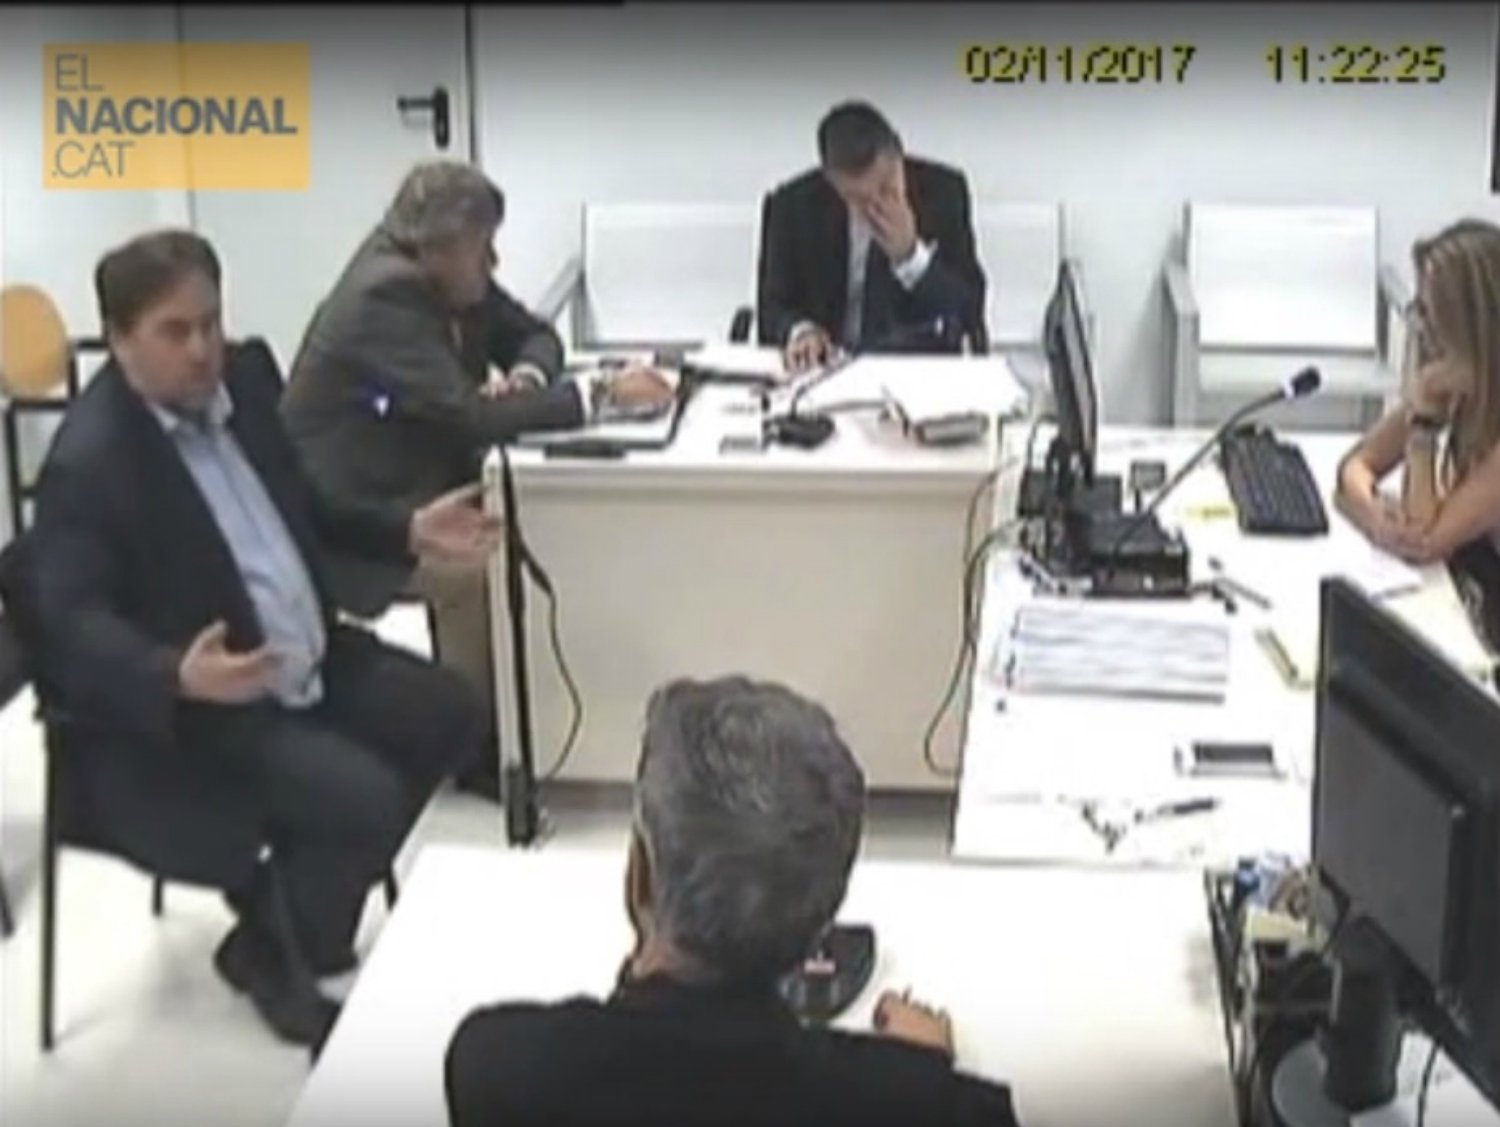 VÍDEO: Les declaracions de Junqueras i Forn a l'Audiència Nacional, un any després